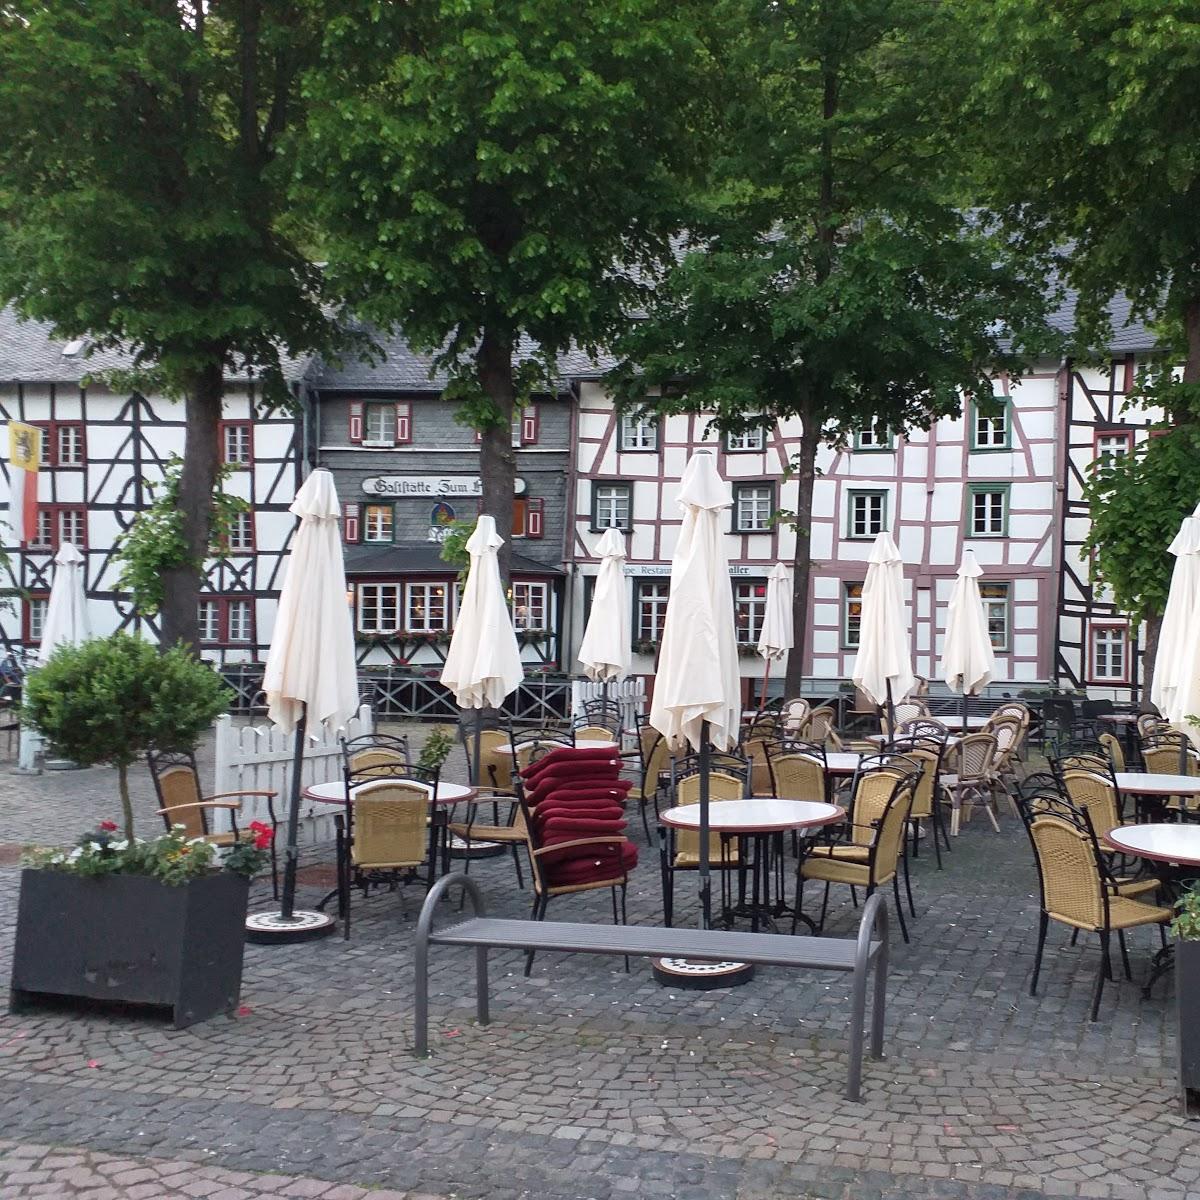 Restaurant "Altstadt Imbiss" in Monschau